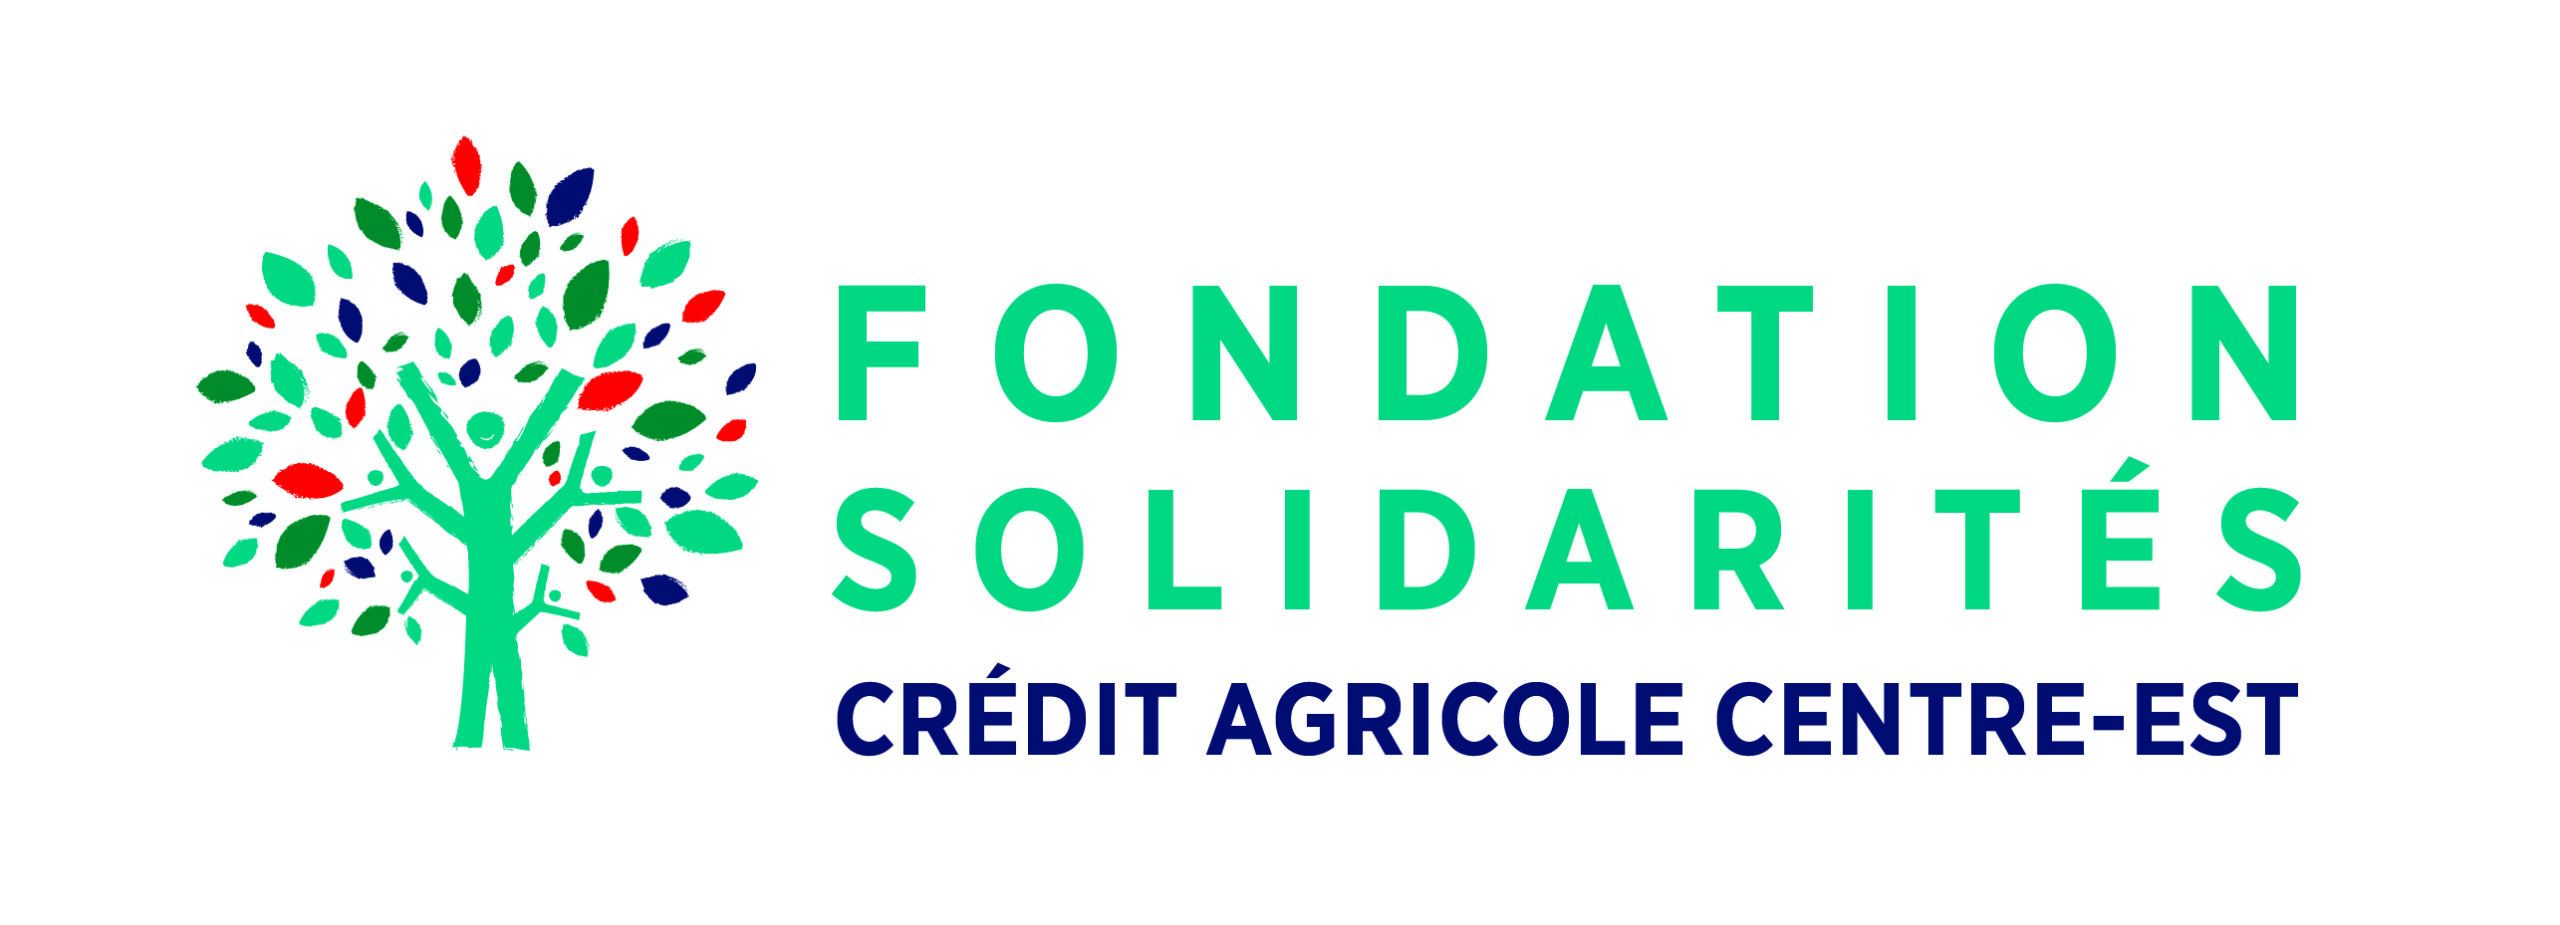 Fondation Solidarité Crédit Agricole Centre-Est